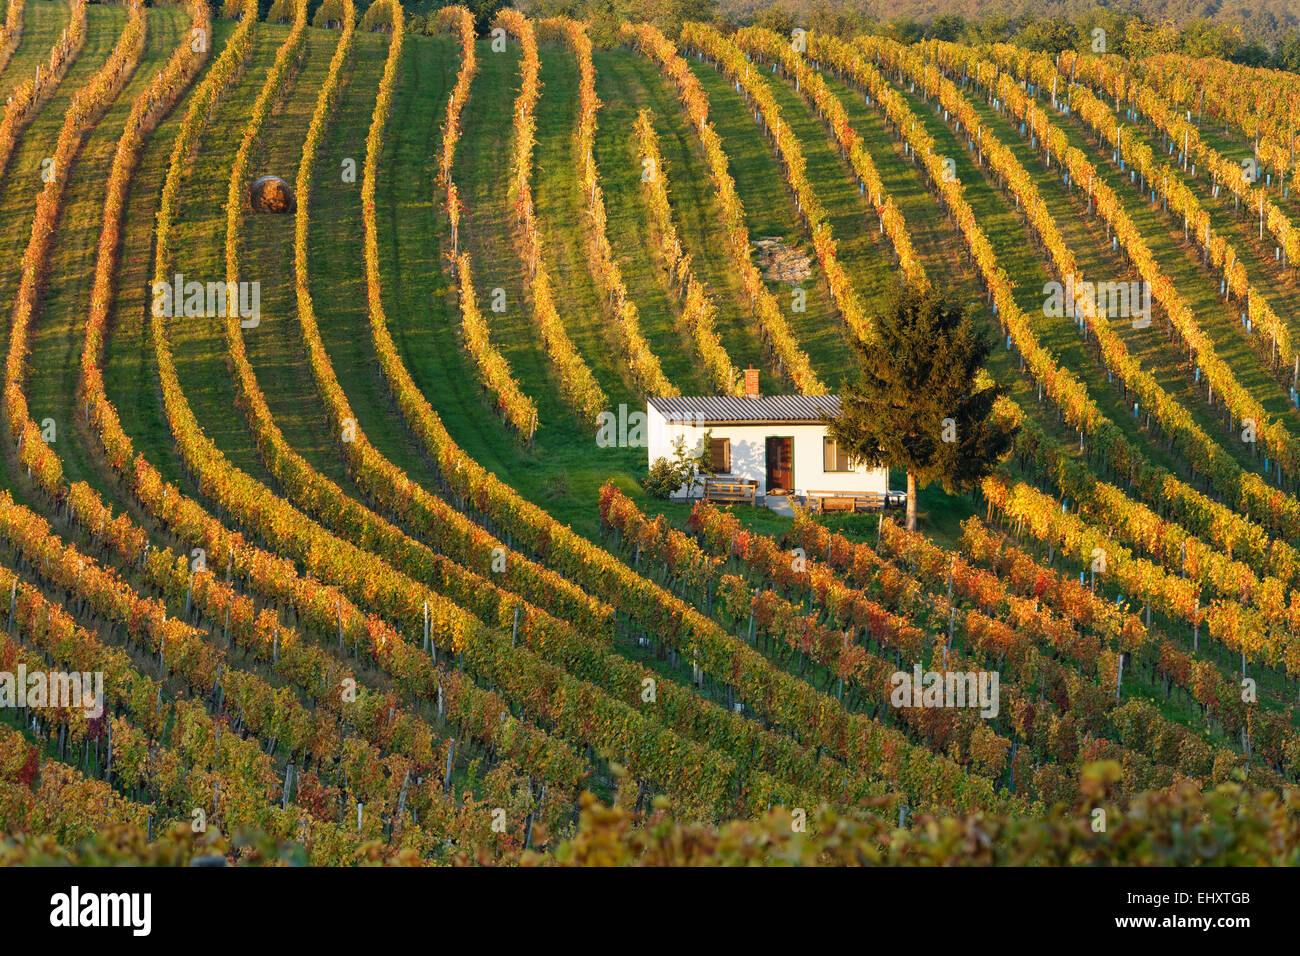 Austria, Burgenland, Oberpullendorf District, Neckenmarkt, vineyard in autumn Stock Photo